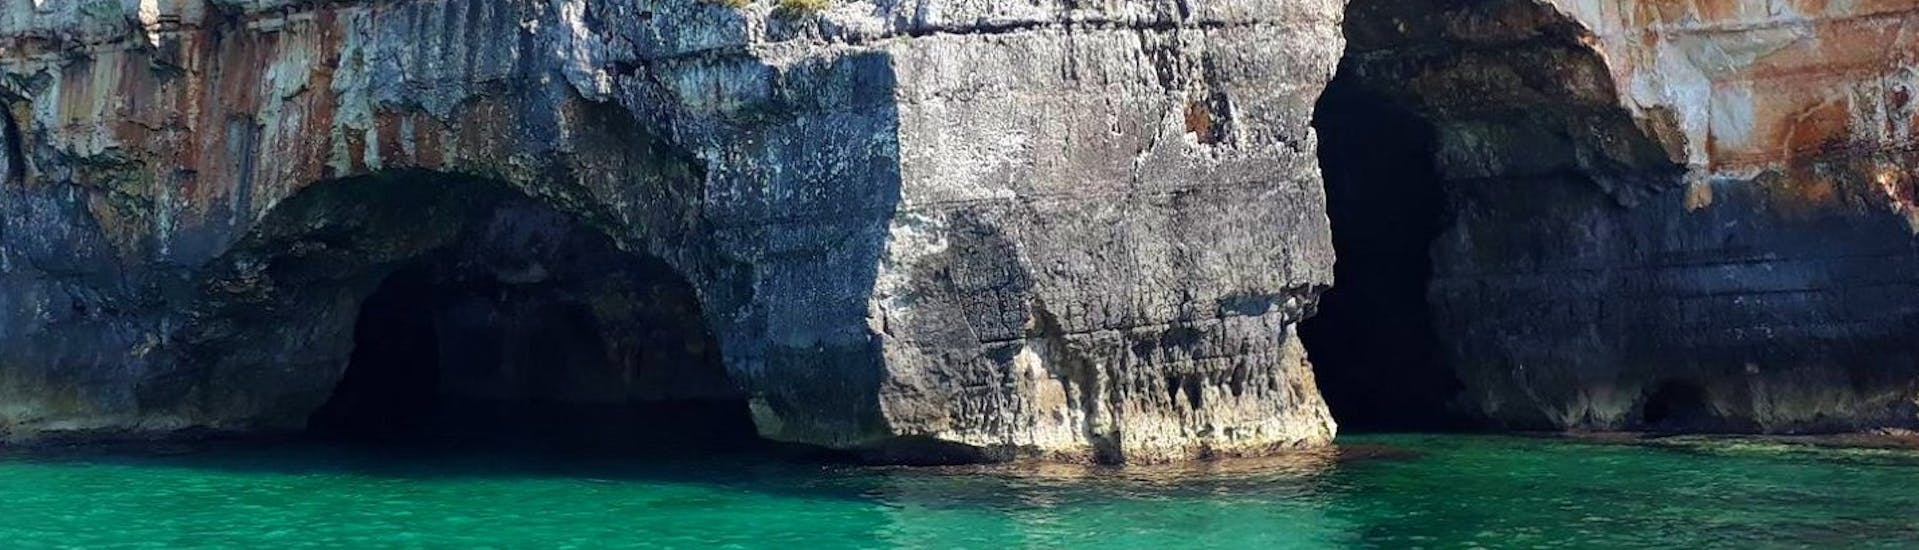 Imagen de la impresionante Grotta delle Tre Porte tomada durante un alquiler de barco en Torre Vado para hasta 6 personas con Rosa dei Venti Excursions.